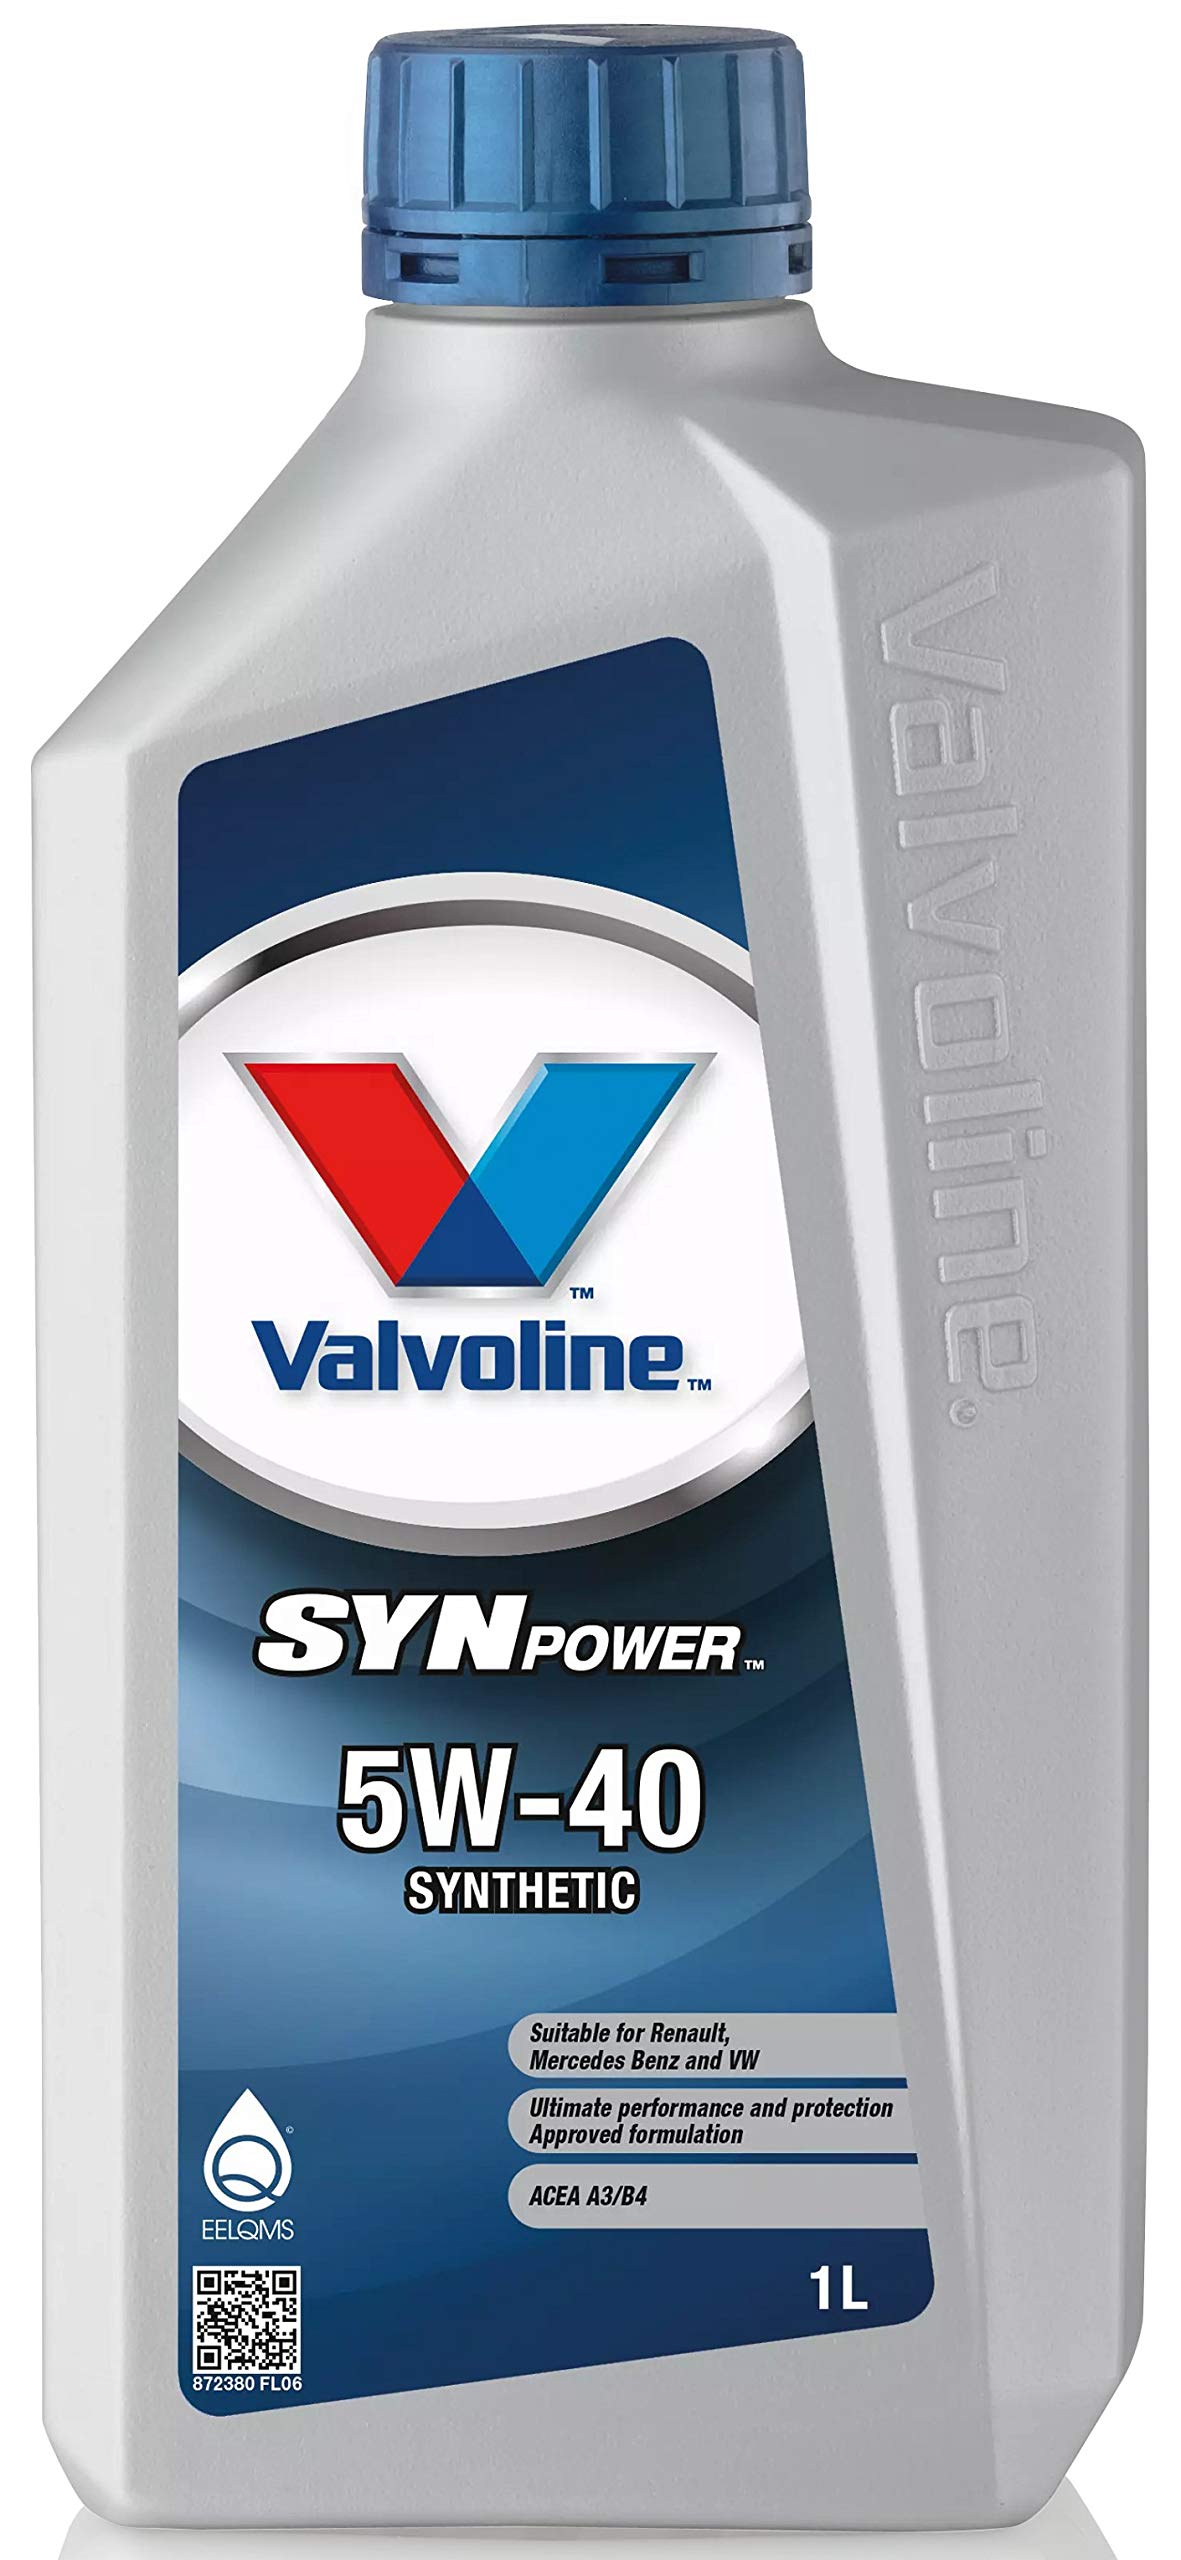 Valvoline SynPower 5W-40, 1L von Valvoline